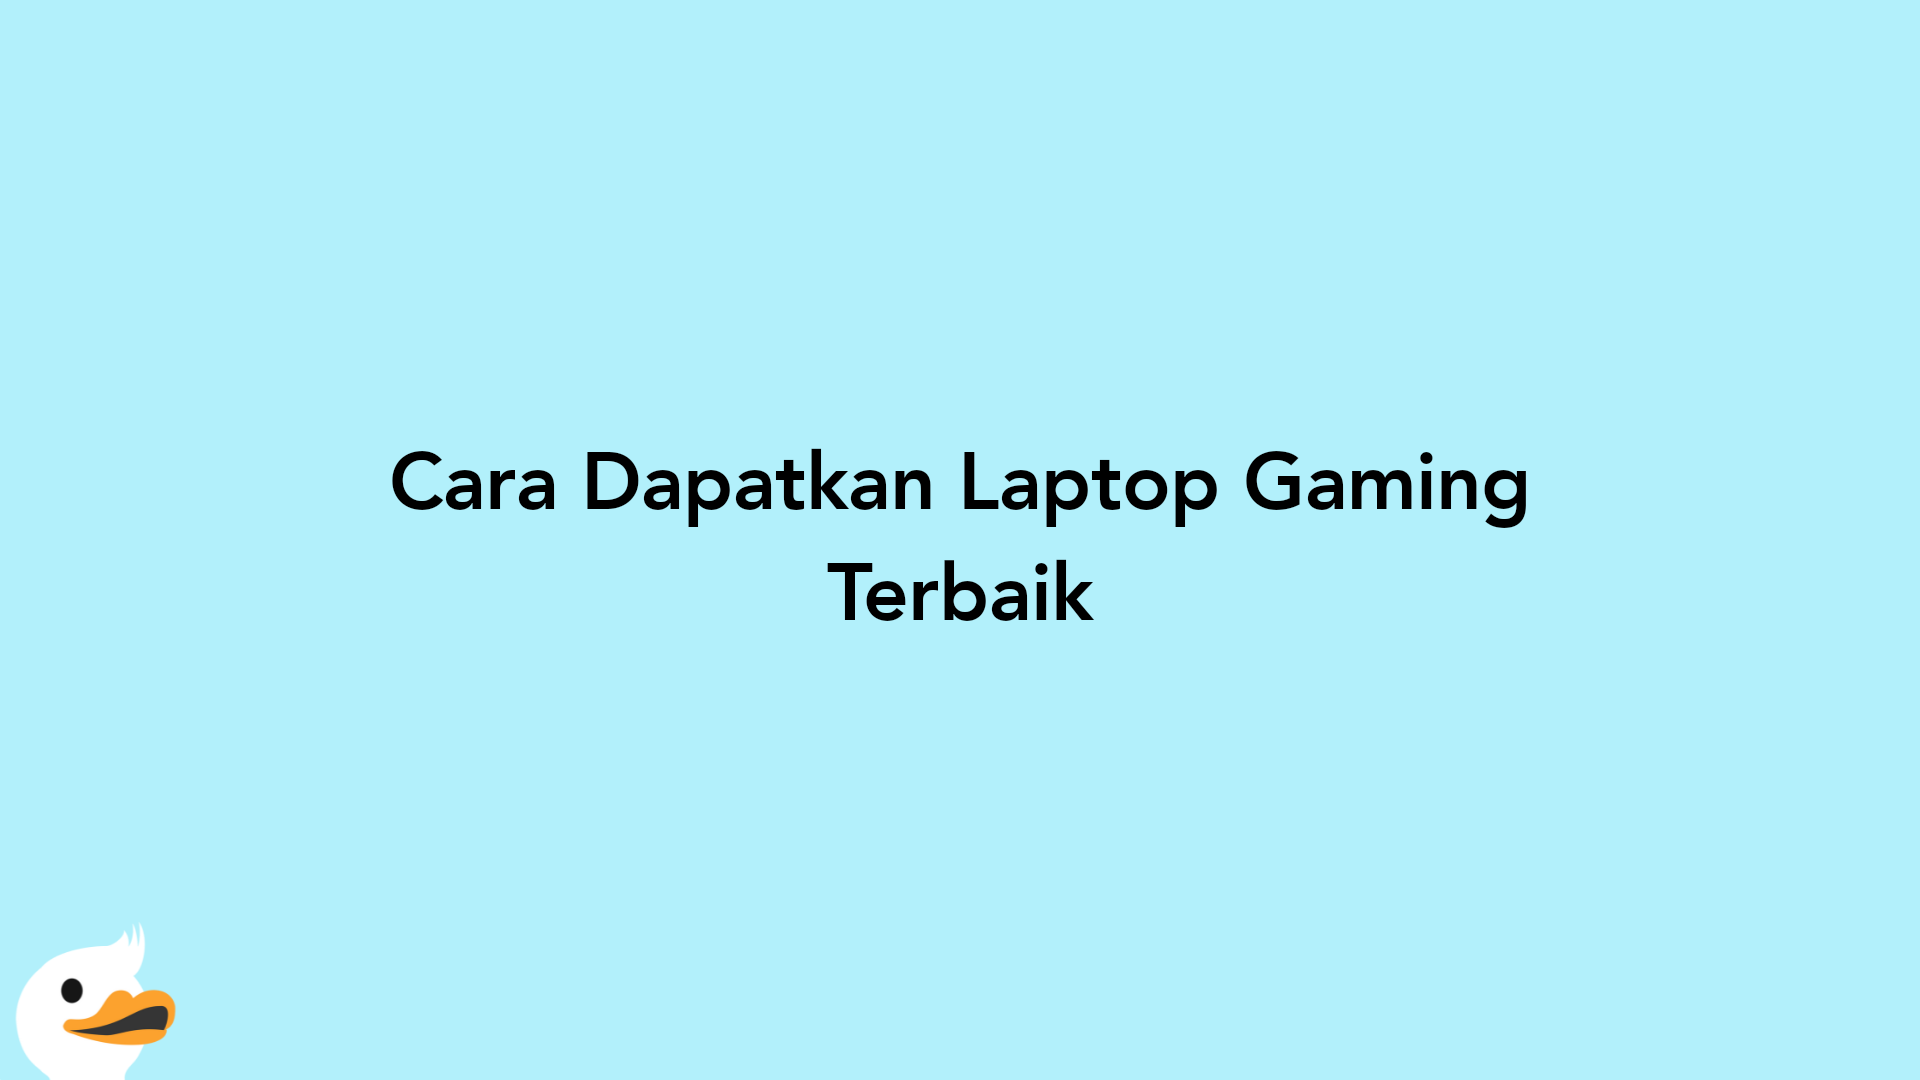 Cara Dapatkan Laptop Gaming Terbaik